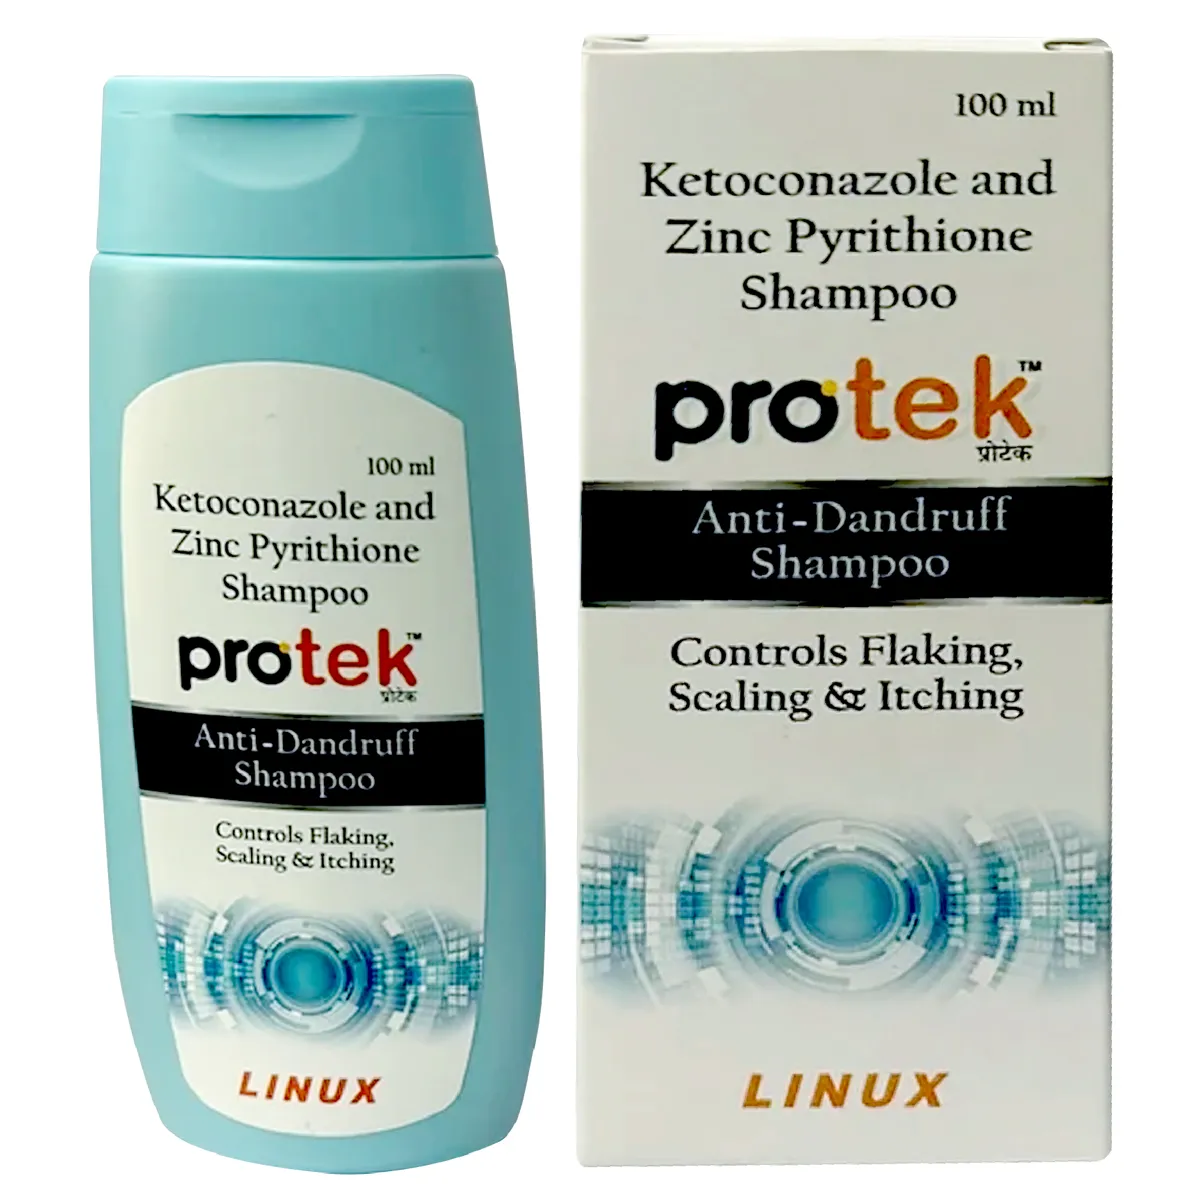 Protek Shampoo